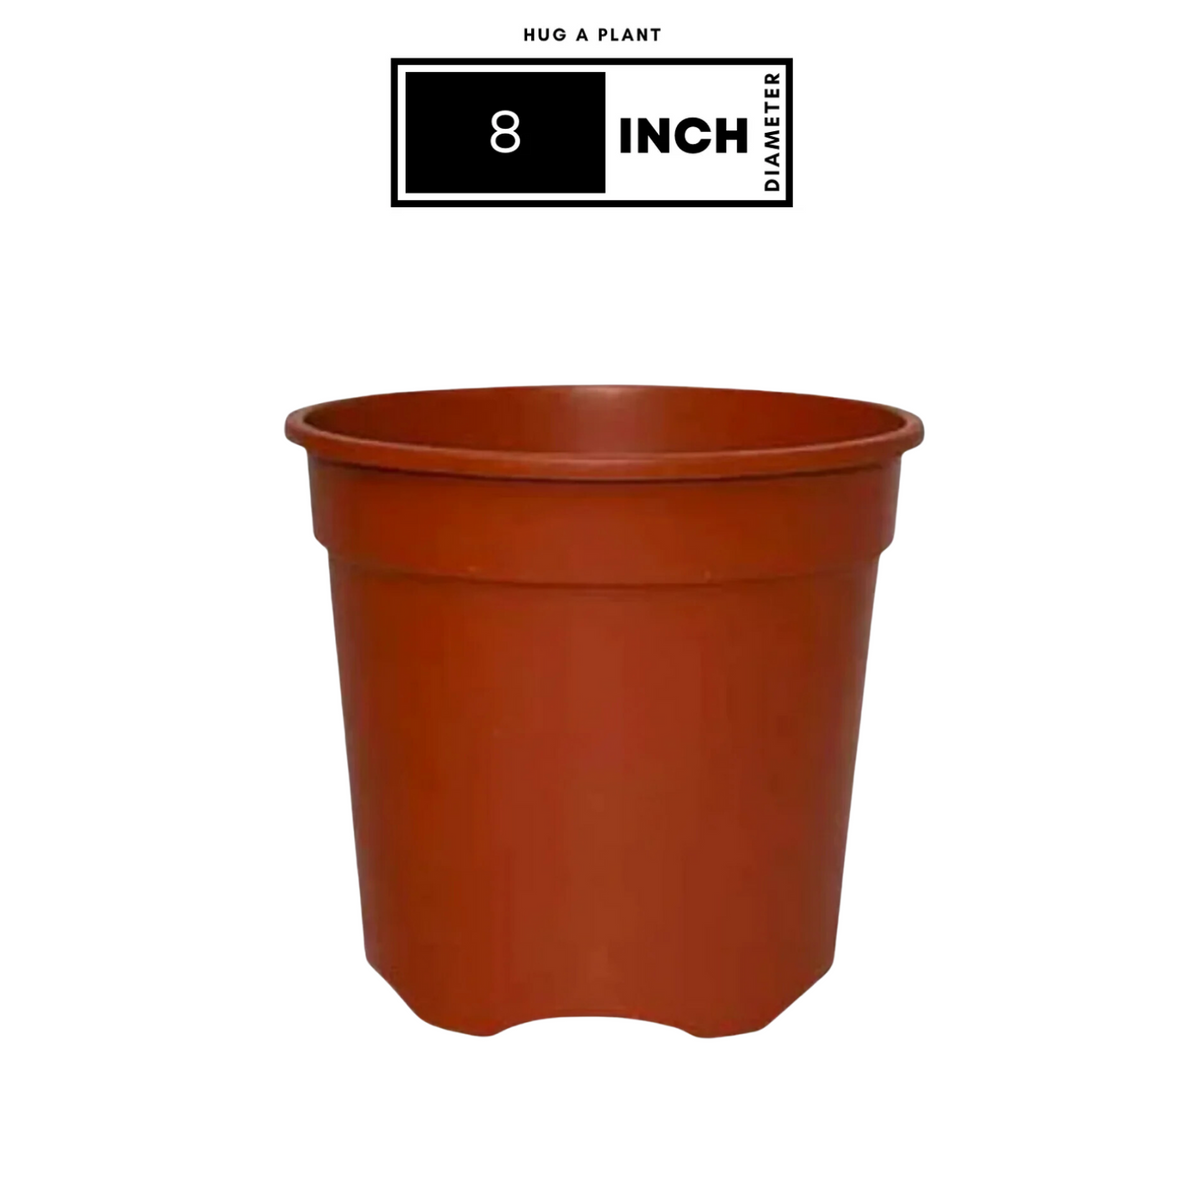 8 Inch Gro Pro Terracotta Plastic Pot for Home & Garden